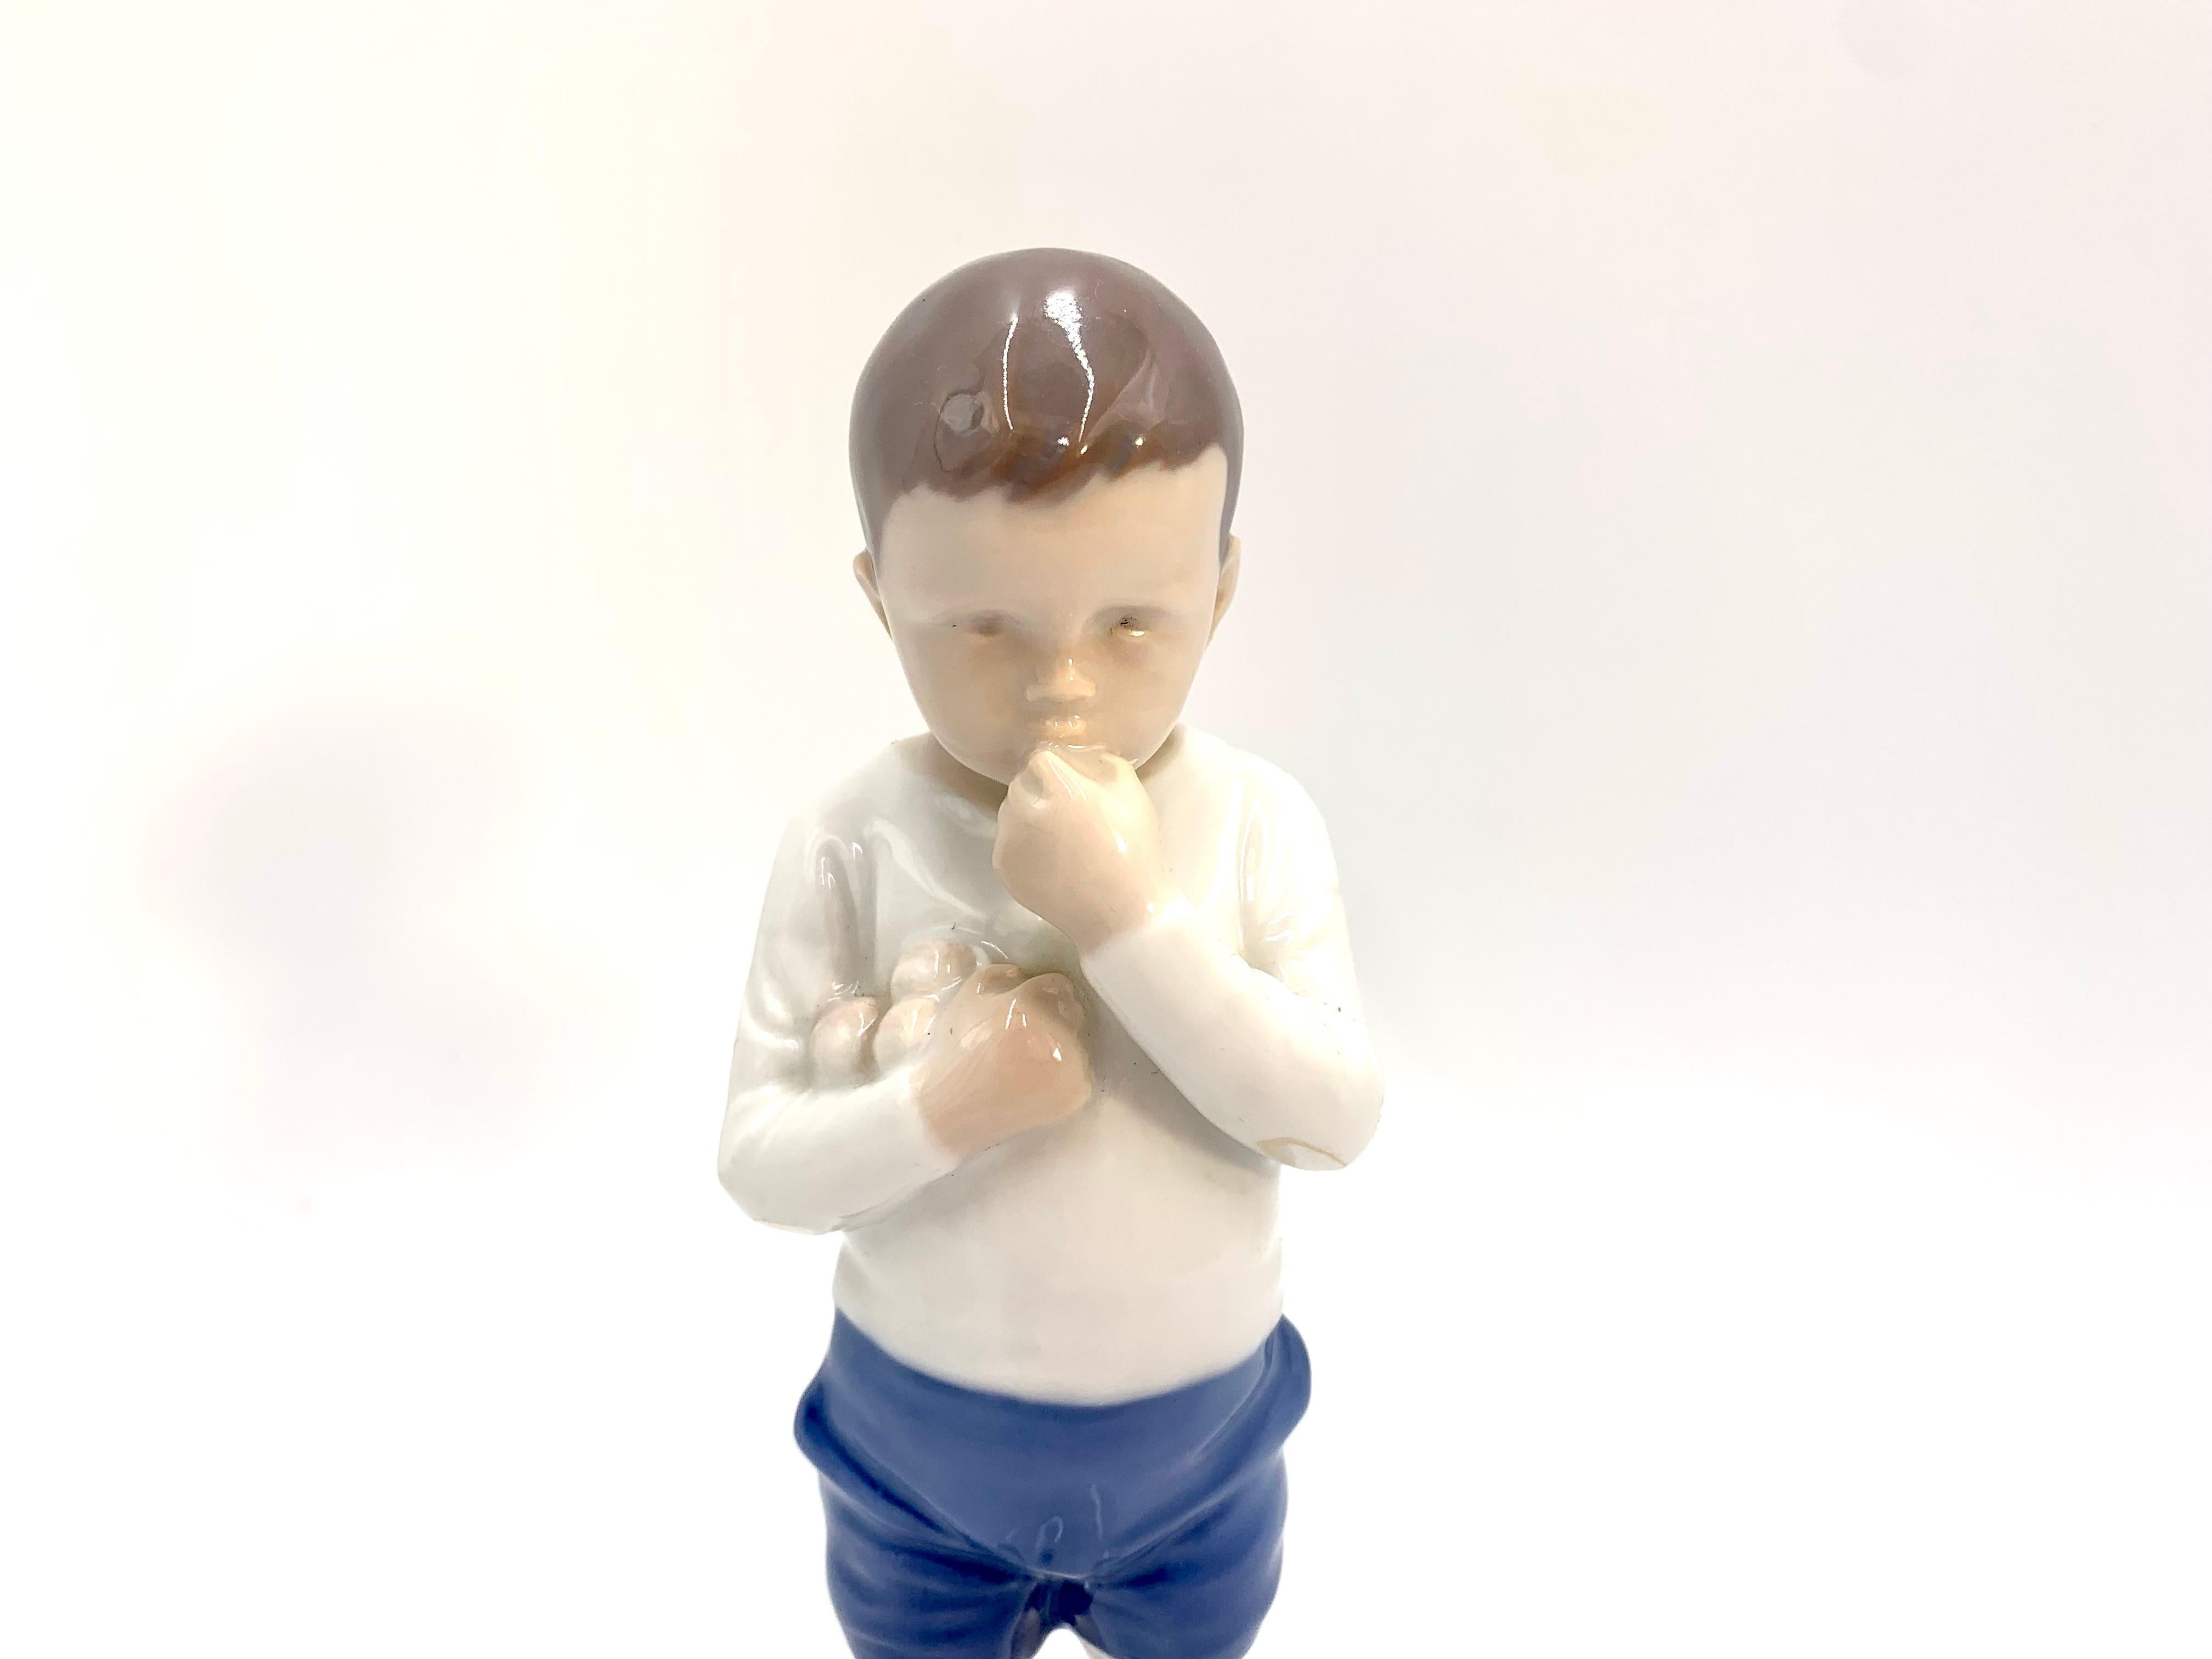 Figurine en porcelaine d'un garçon

Fabriqué au Danemark par Bing & Grondahl

Fabriqué dans les années 1980.

Numéro de modèle : 1696

Très bon état, aucun dommage

Mesures : hauteur 18,5 cm largeur 5,5 cm profondeur 6 cm.